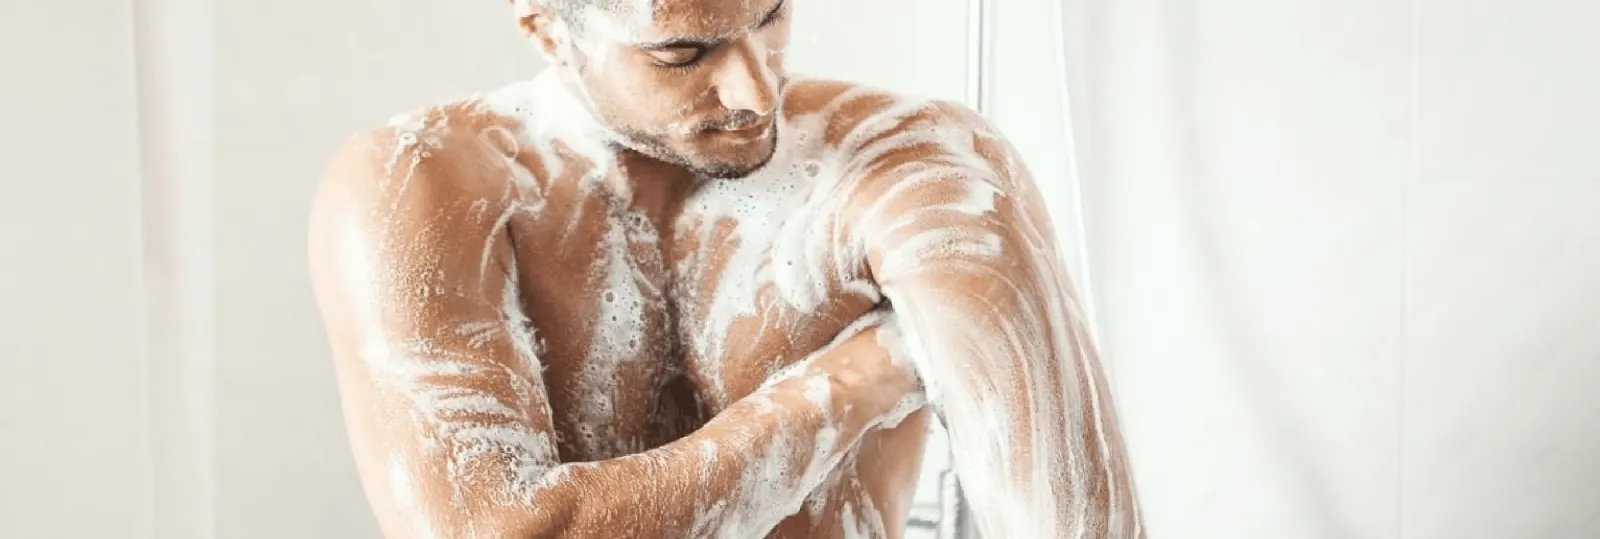 Le rôle de l'hygiène dans le rasage intime masculin